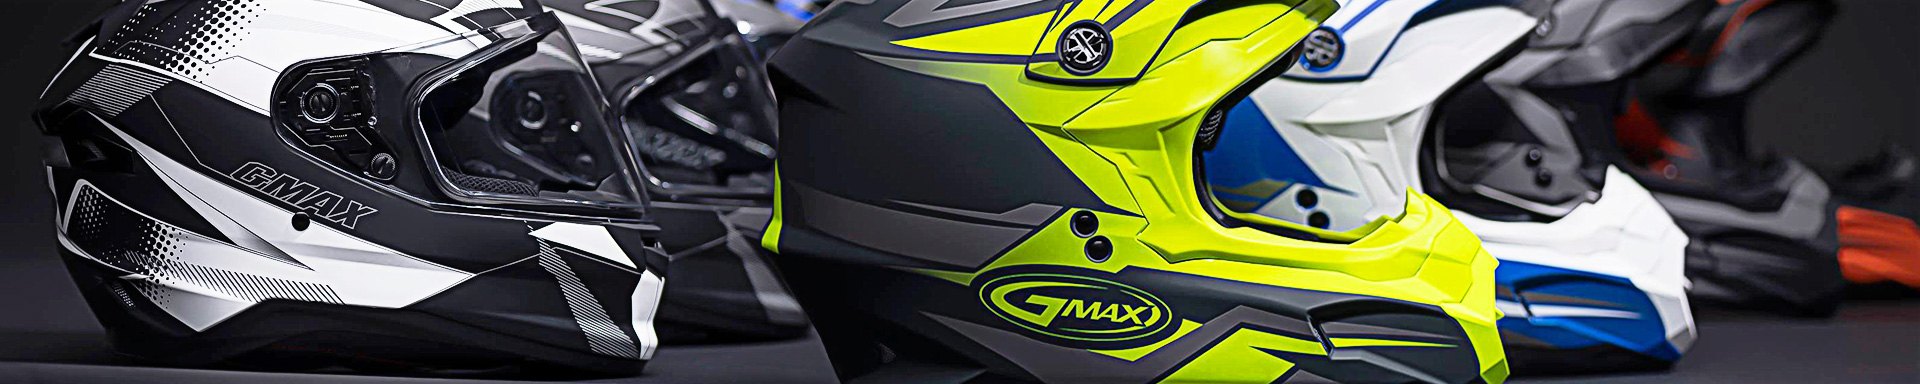 GMAX Dual Sport Helmets